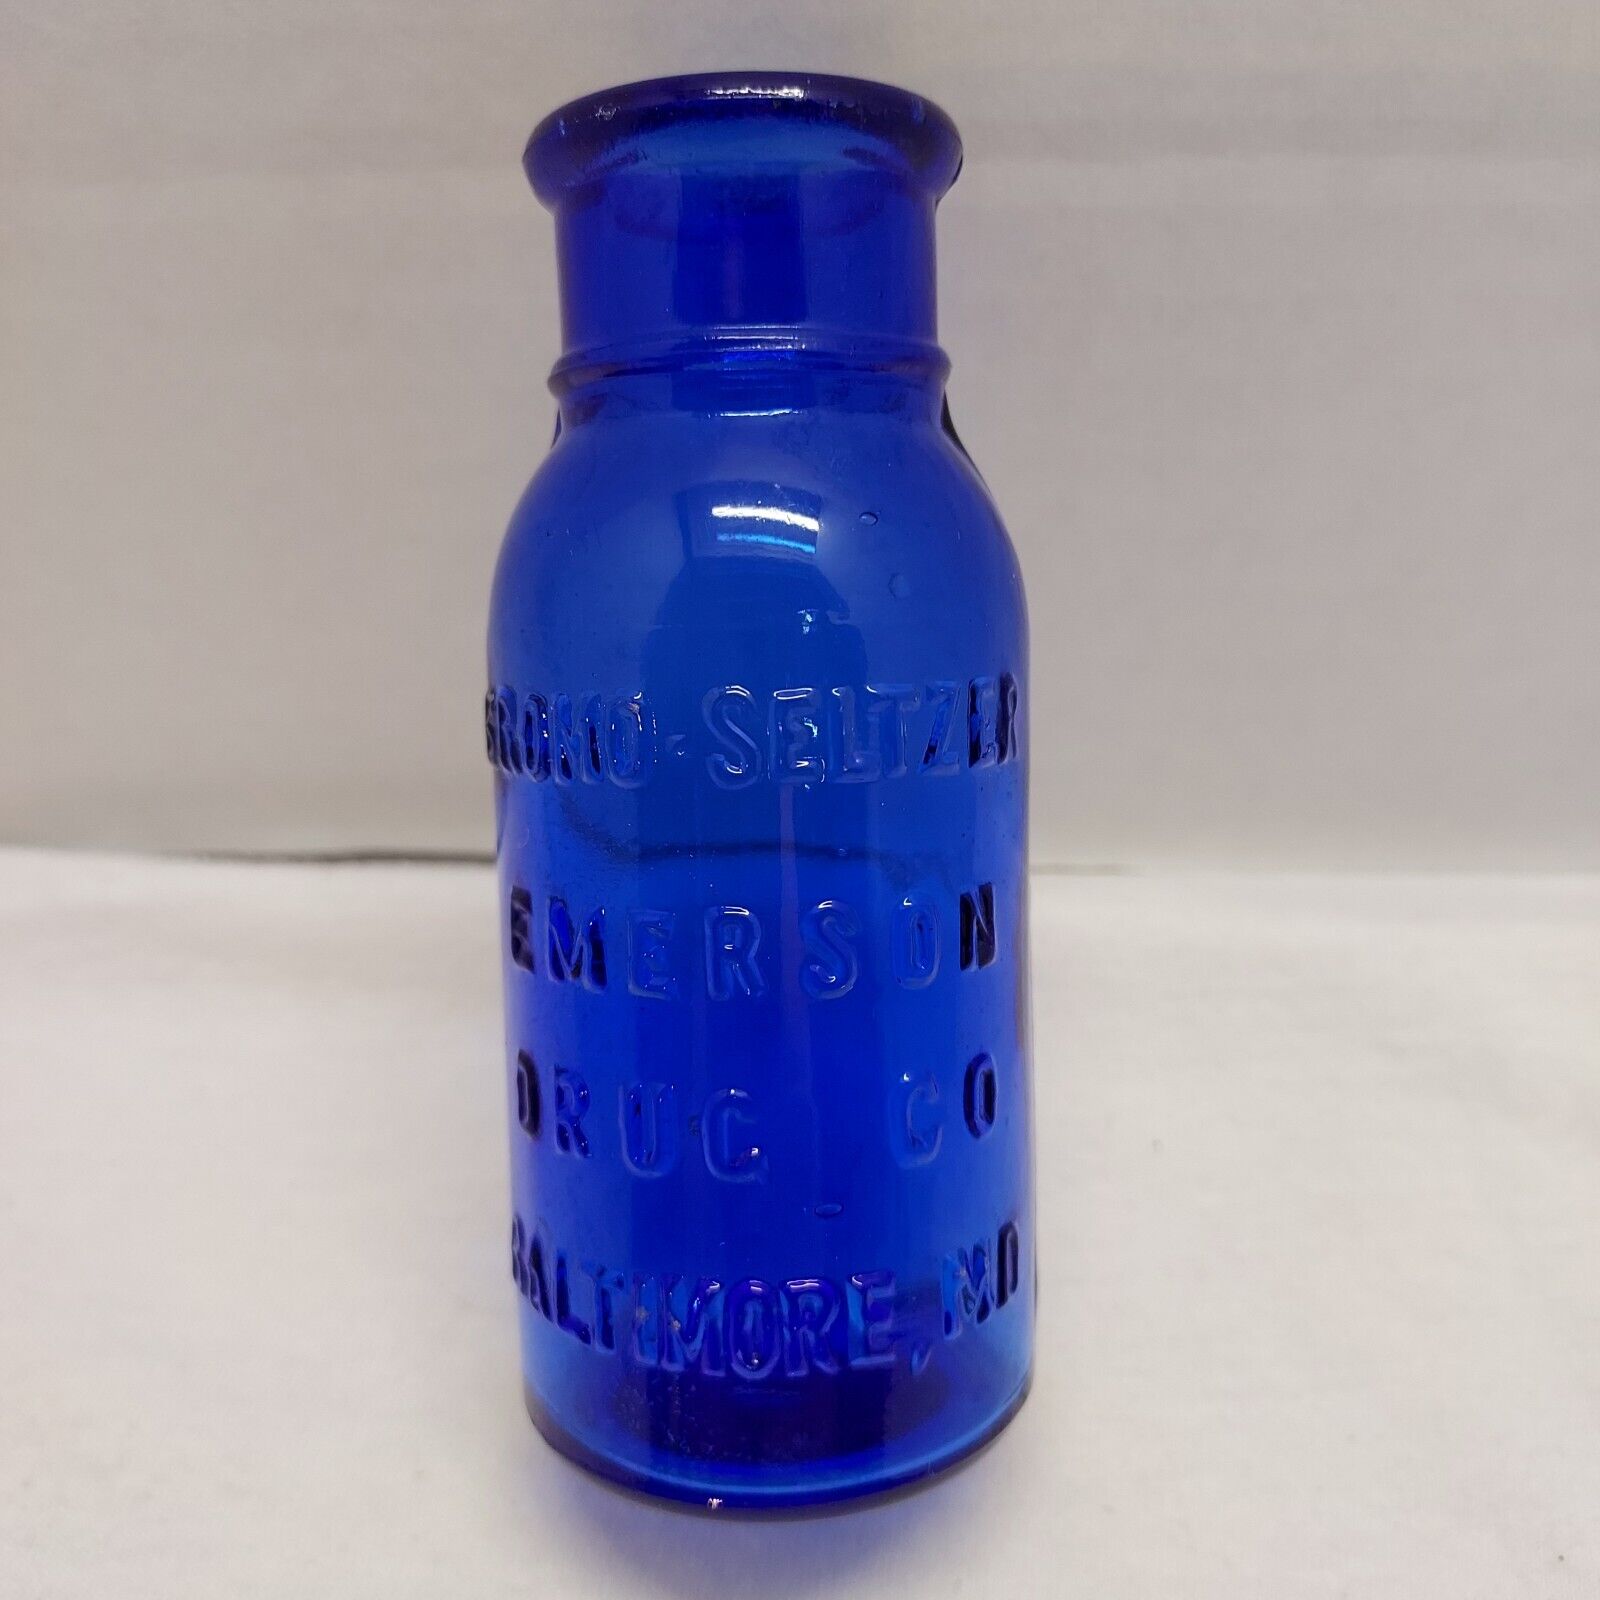 Antique Cobalt Blue Bromo Seltzer Bottle Emerson Drug Co Baltimore, MD.